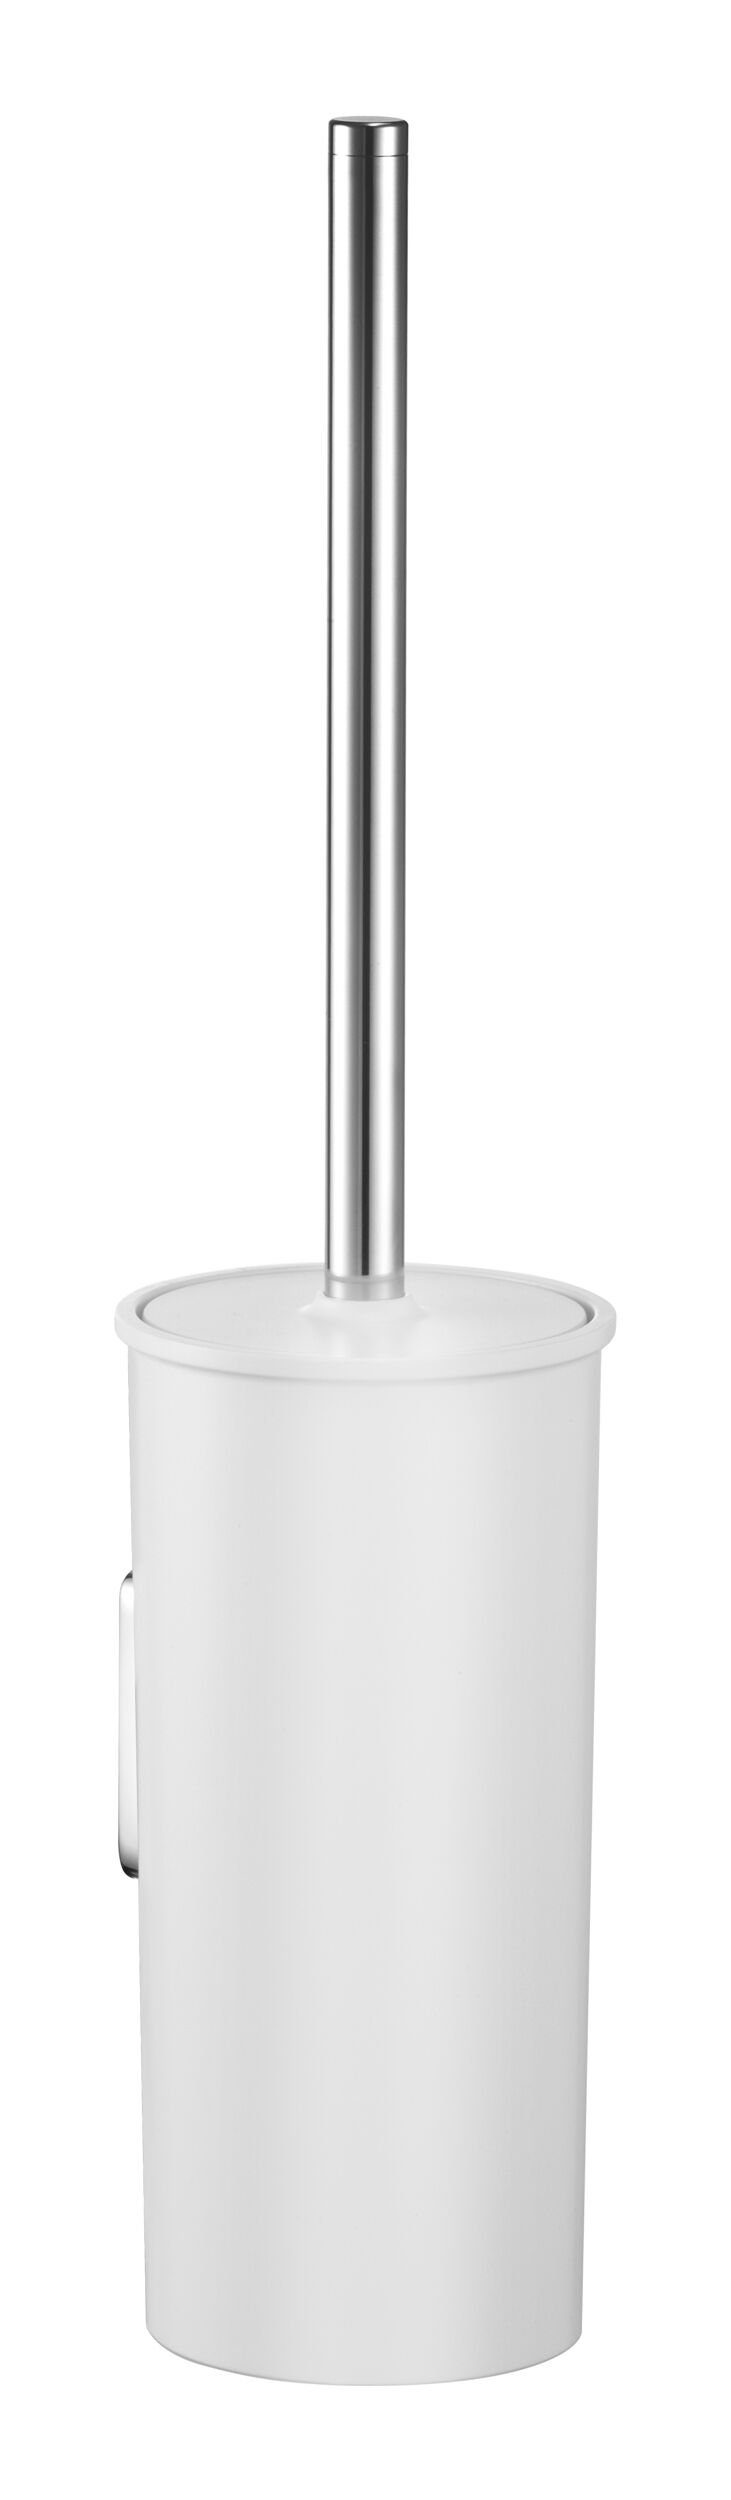 Keuco WC-Garnitur Collection Moll, Toilettenbürstengarnitur 398 mm -  Verchromt / Weiß